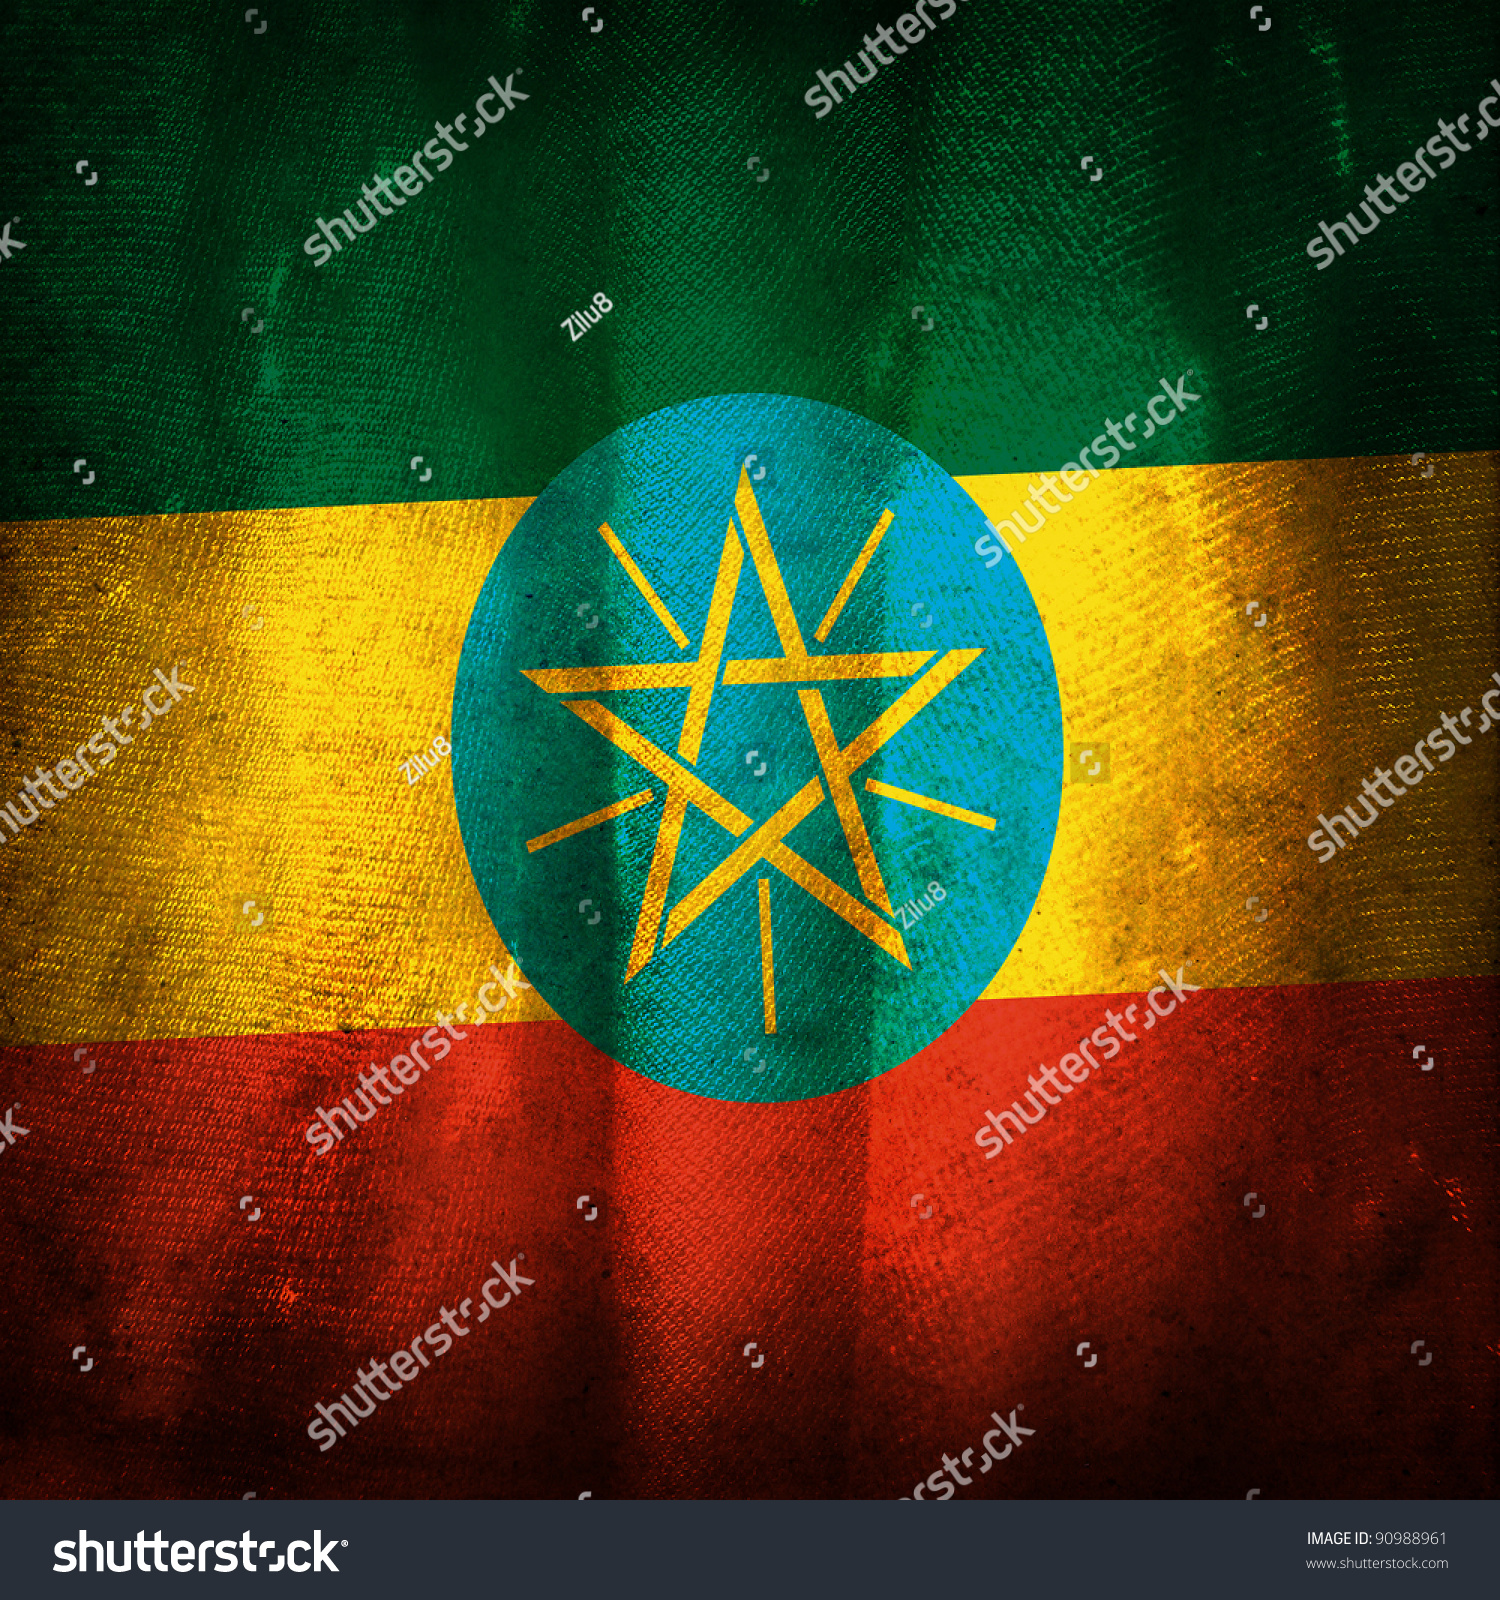 Old Grunge Flag Ethiopia Stock Photo (Safe to Use) 90988961 ...